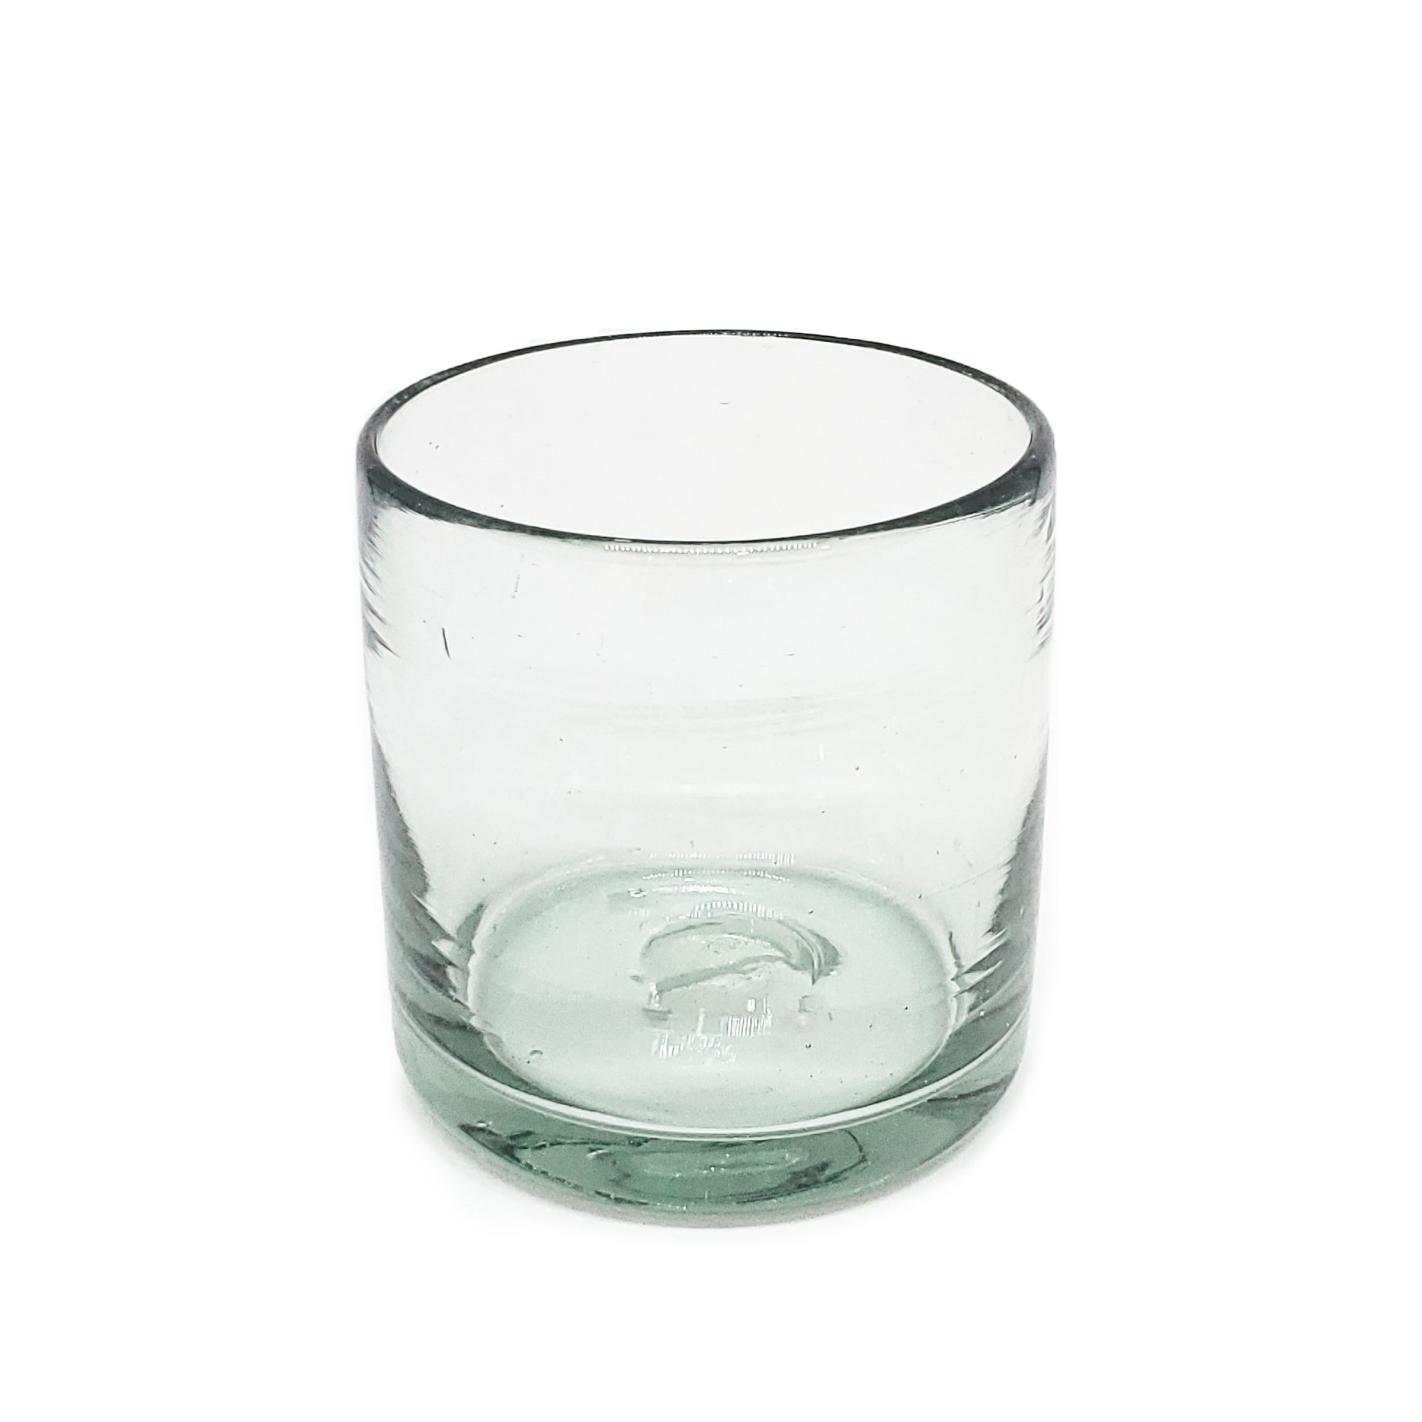 Color Transparente al Mayoreo / vasos DOF 8oz Transparentes, 8 oz, Vidrio Reciclado, Libre de Plomo y Toxinas / stos artesanales vasos le darn un toque clsico a su bebida favorita.